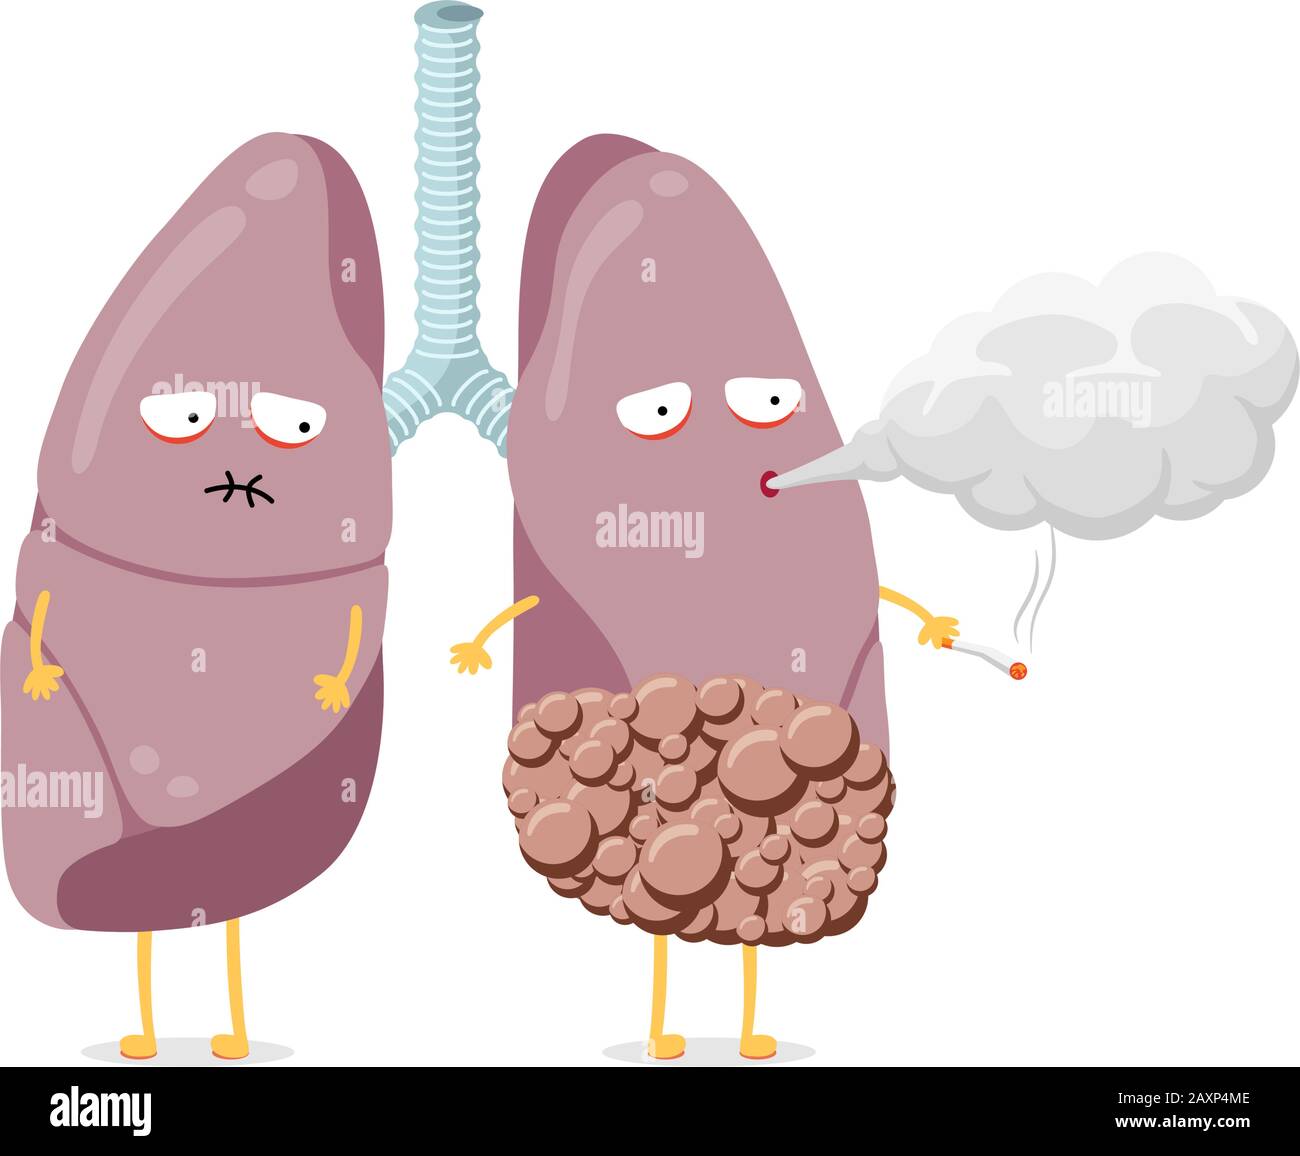 Unhealthy Sick polmoni fumatore personaggio sigaretta. L'organo interno del sistema respiratorio umano con cancro soffia fumo e ha una cattiva salute. Immagine eps vettore di dipendenza da abitudine pericolosa Illustrazione Vettoriale